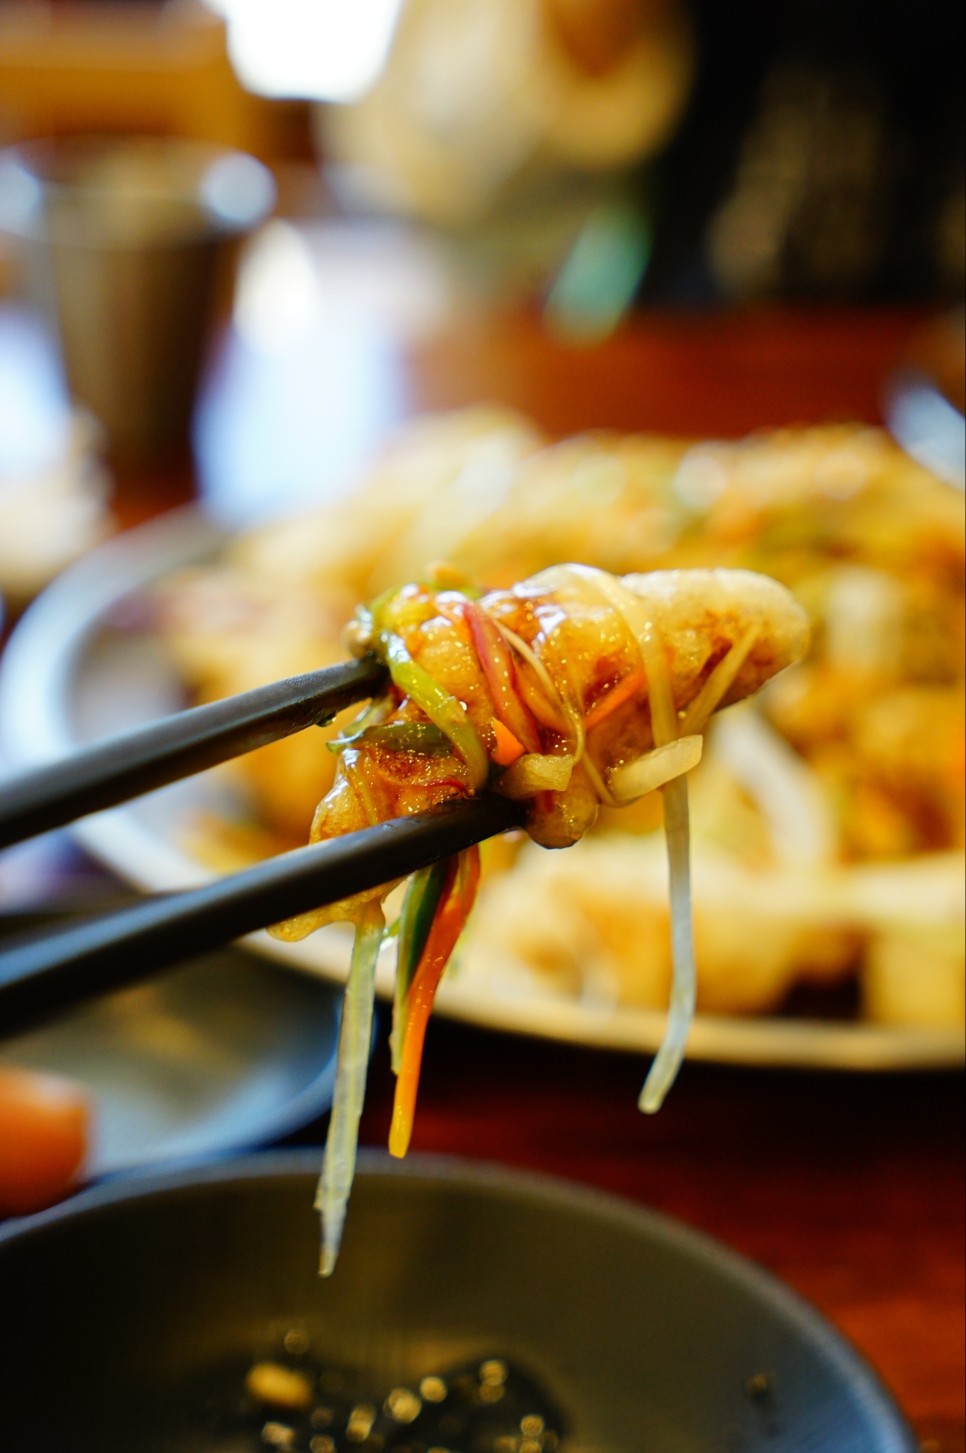 함안 중국집으로 유명한 악양루 쟁반짜장과 탕수육 웨이팅 할만하네